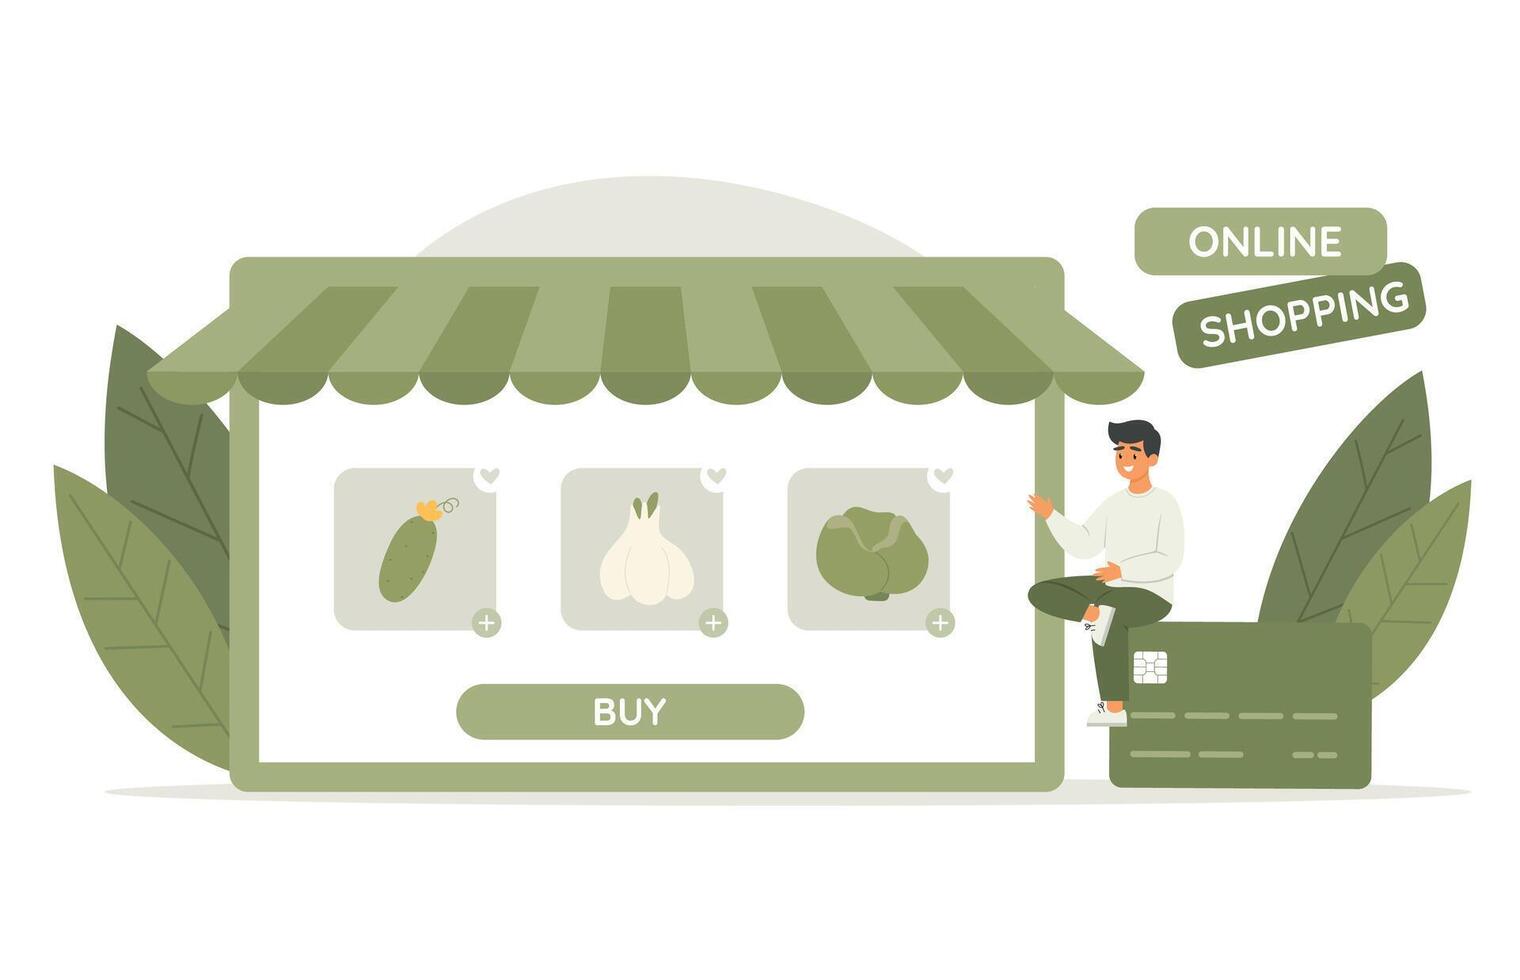 Mann Charakter wählen frisch Gemüse von speichern. online Einkaufen Service. Vektor Illustration im eben Stil